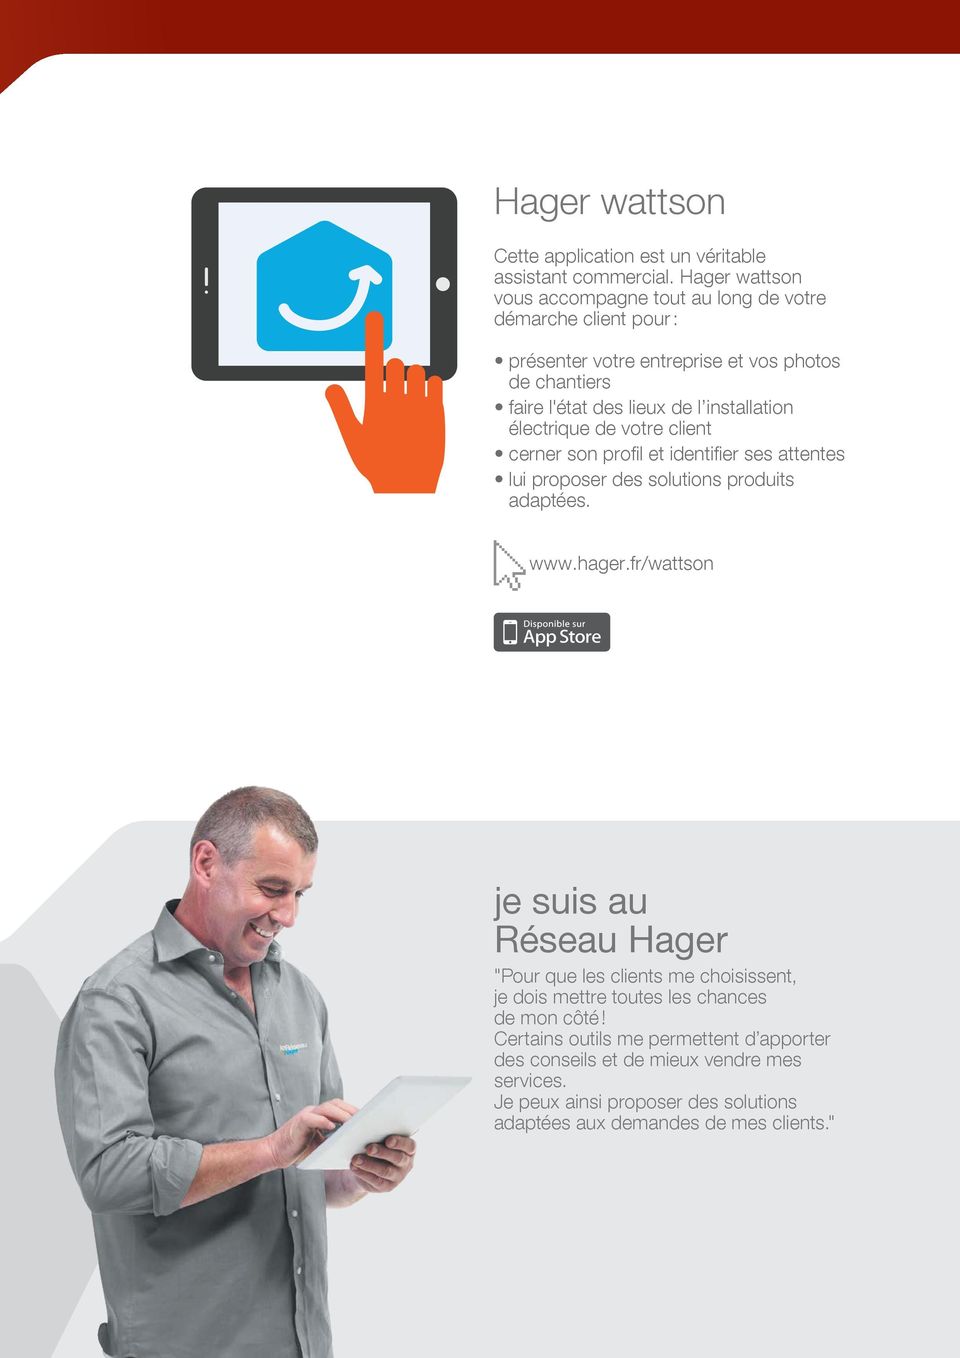 installation électrique de votre client cerner son profil et identifier ses attentes lui proposer des solutions produits adaptées. www.hager.